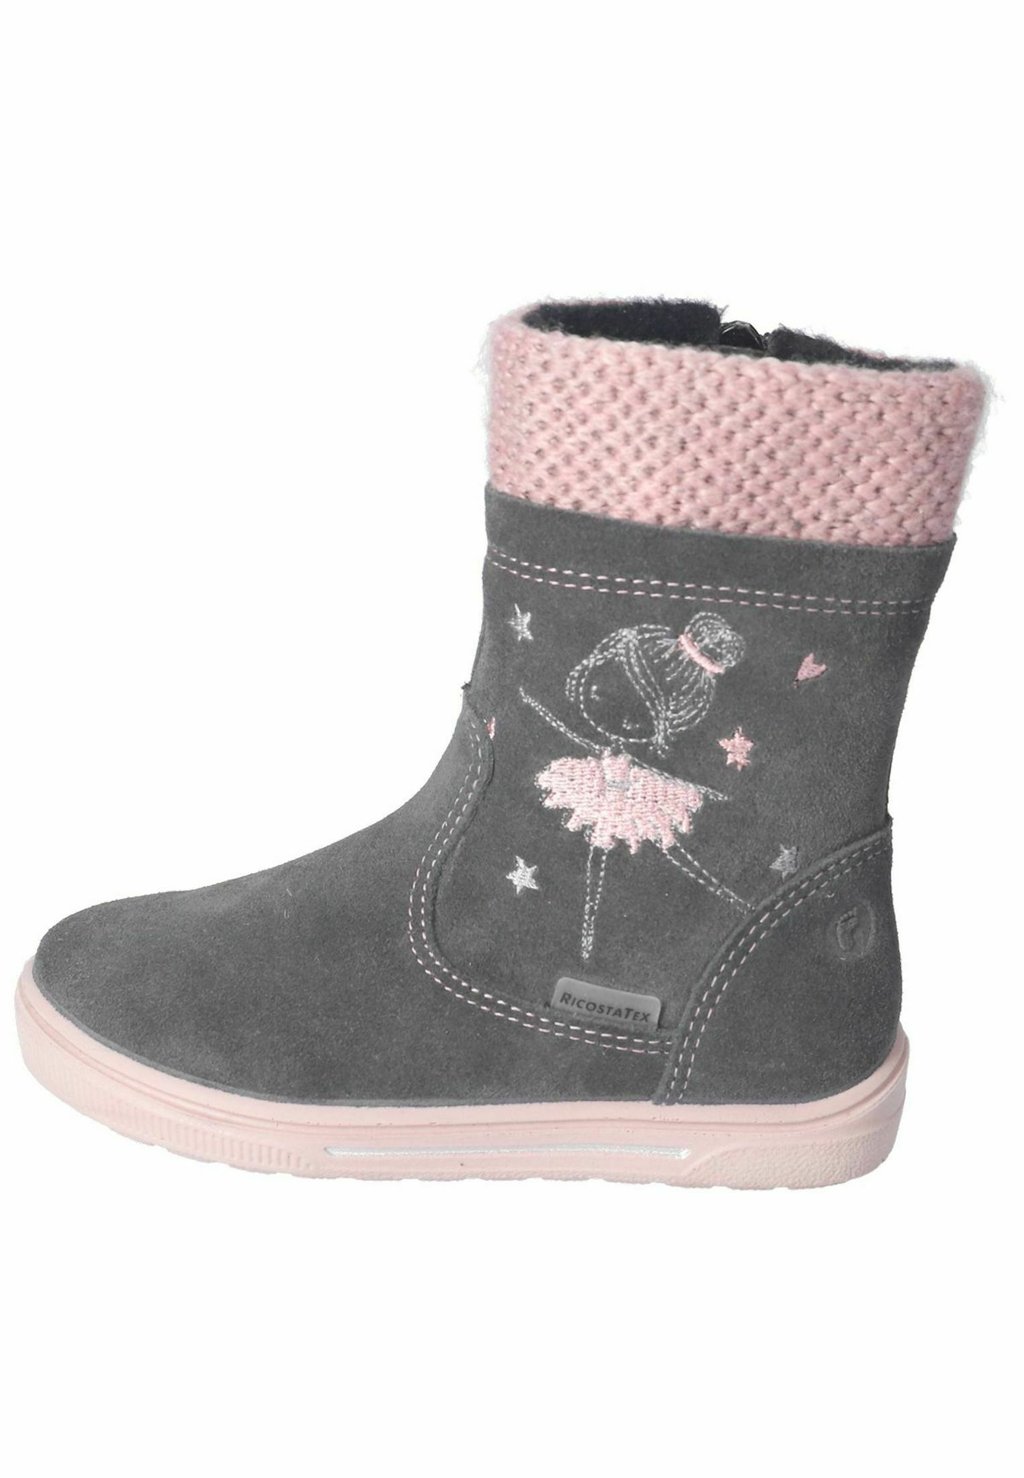 Снегоступы/зимние ботинки Ricosta, цвет asphalt rose снегоступы зимние ботинки ricosta цвет pavone nebel